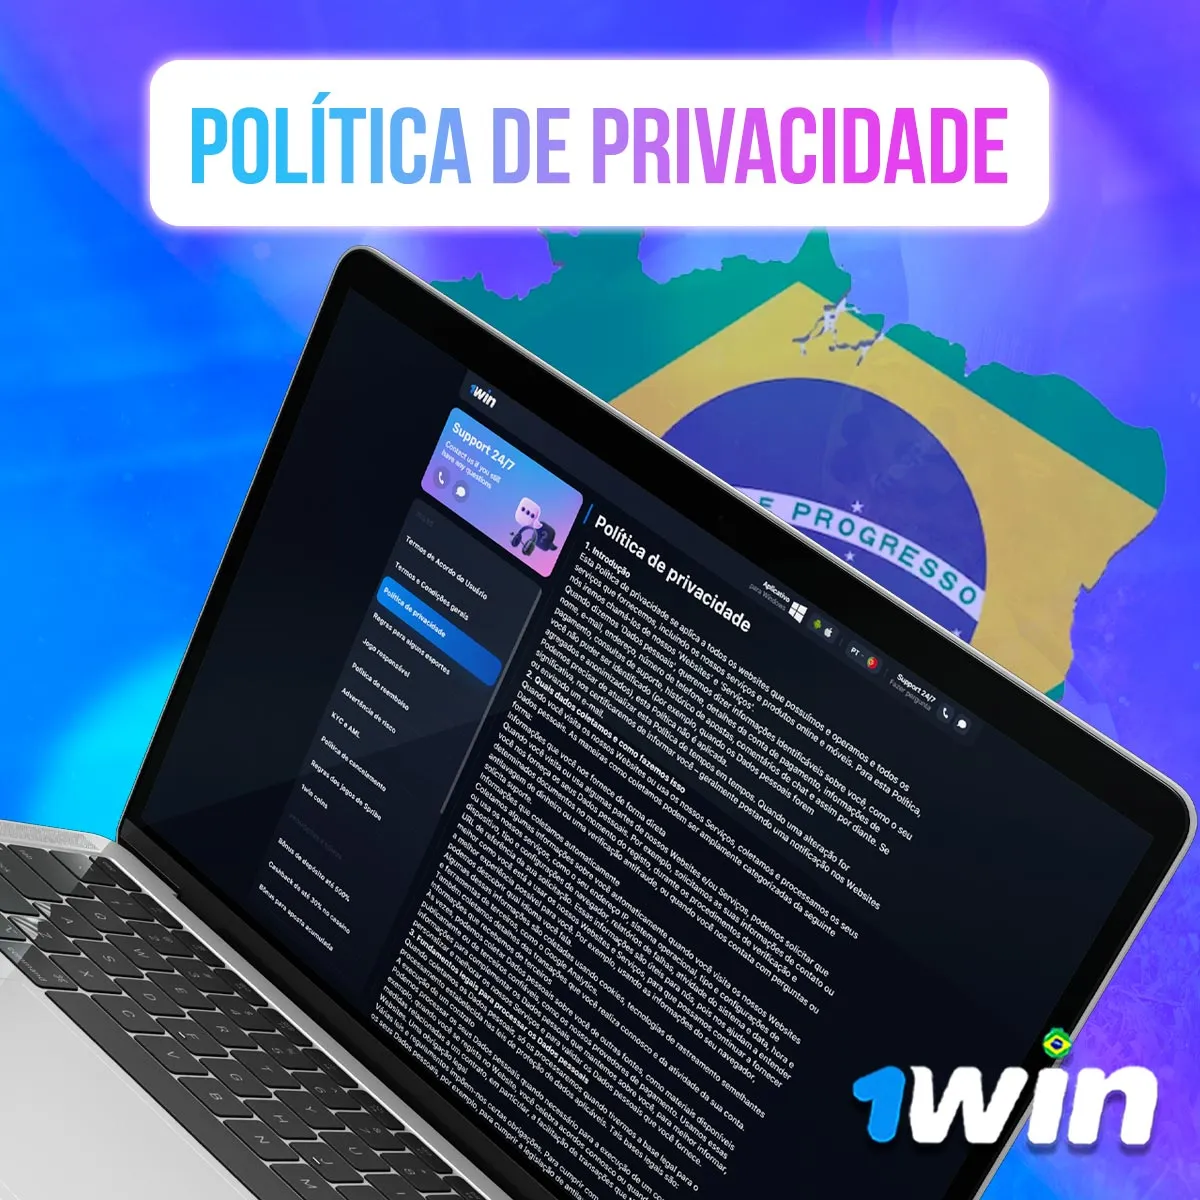 Política de privacidade da 1win no mercado brasileiro